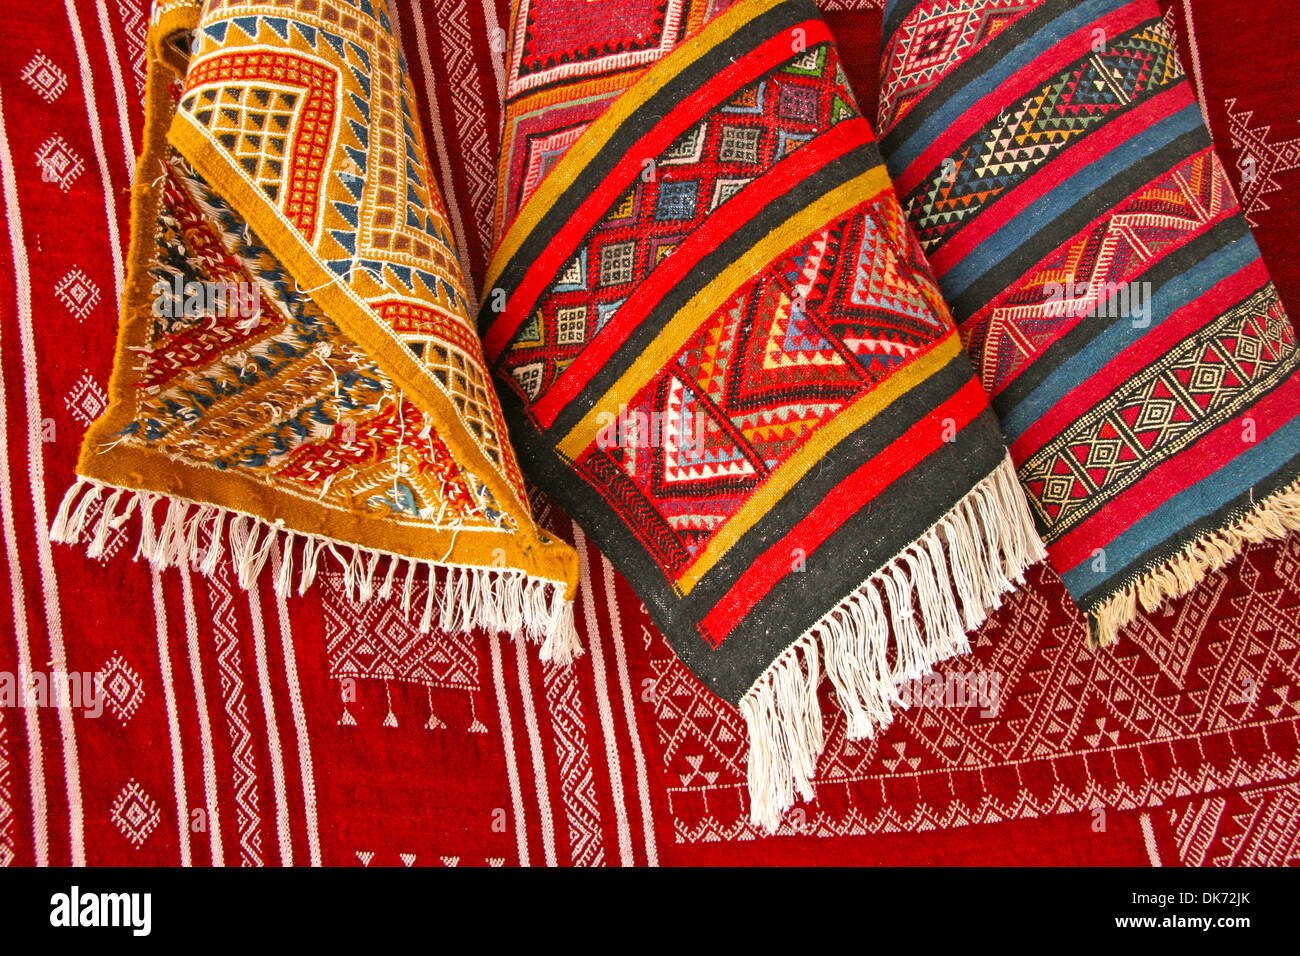 Stapel der Nordafrikanischen Teppiche in rot, orange und braune Farbtöne, Tunesien. Stockfoto